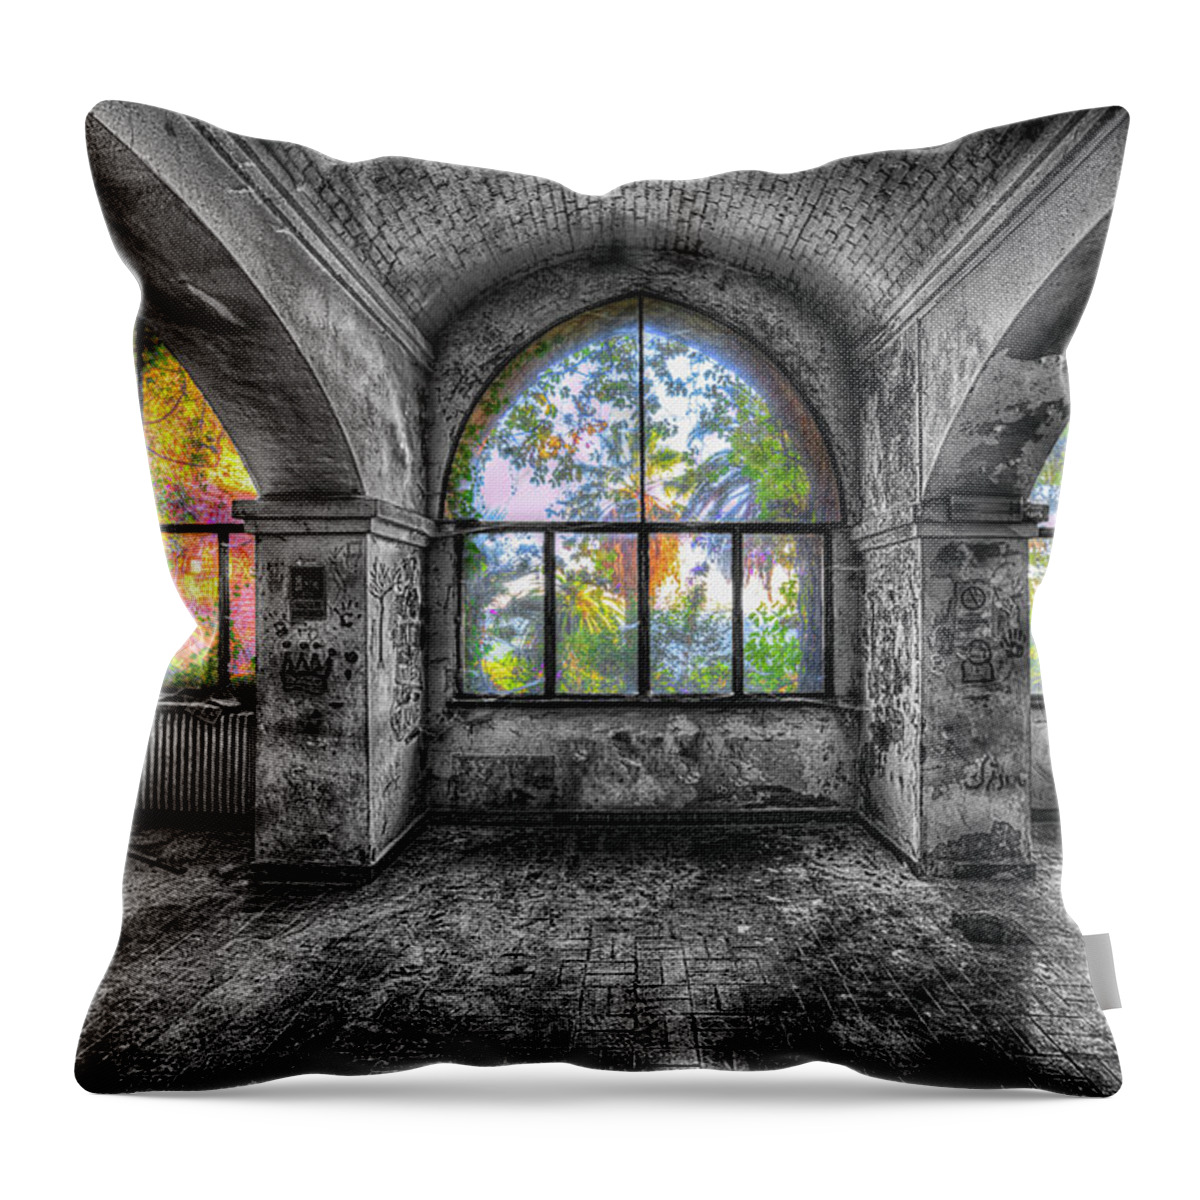 Enrico Pelos Throw Pillow featuring the photograph Villa Of Windows On The Sea - Villa Delle Finestre Sul Mare I by Enrico Pelos